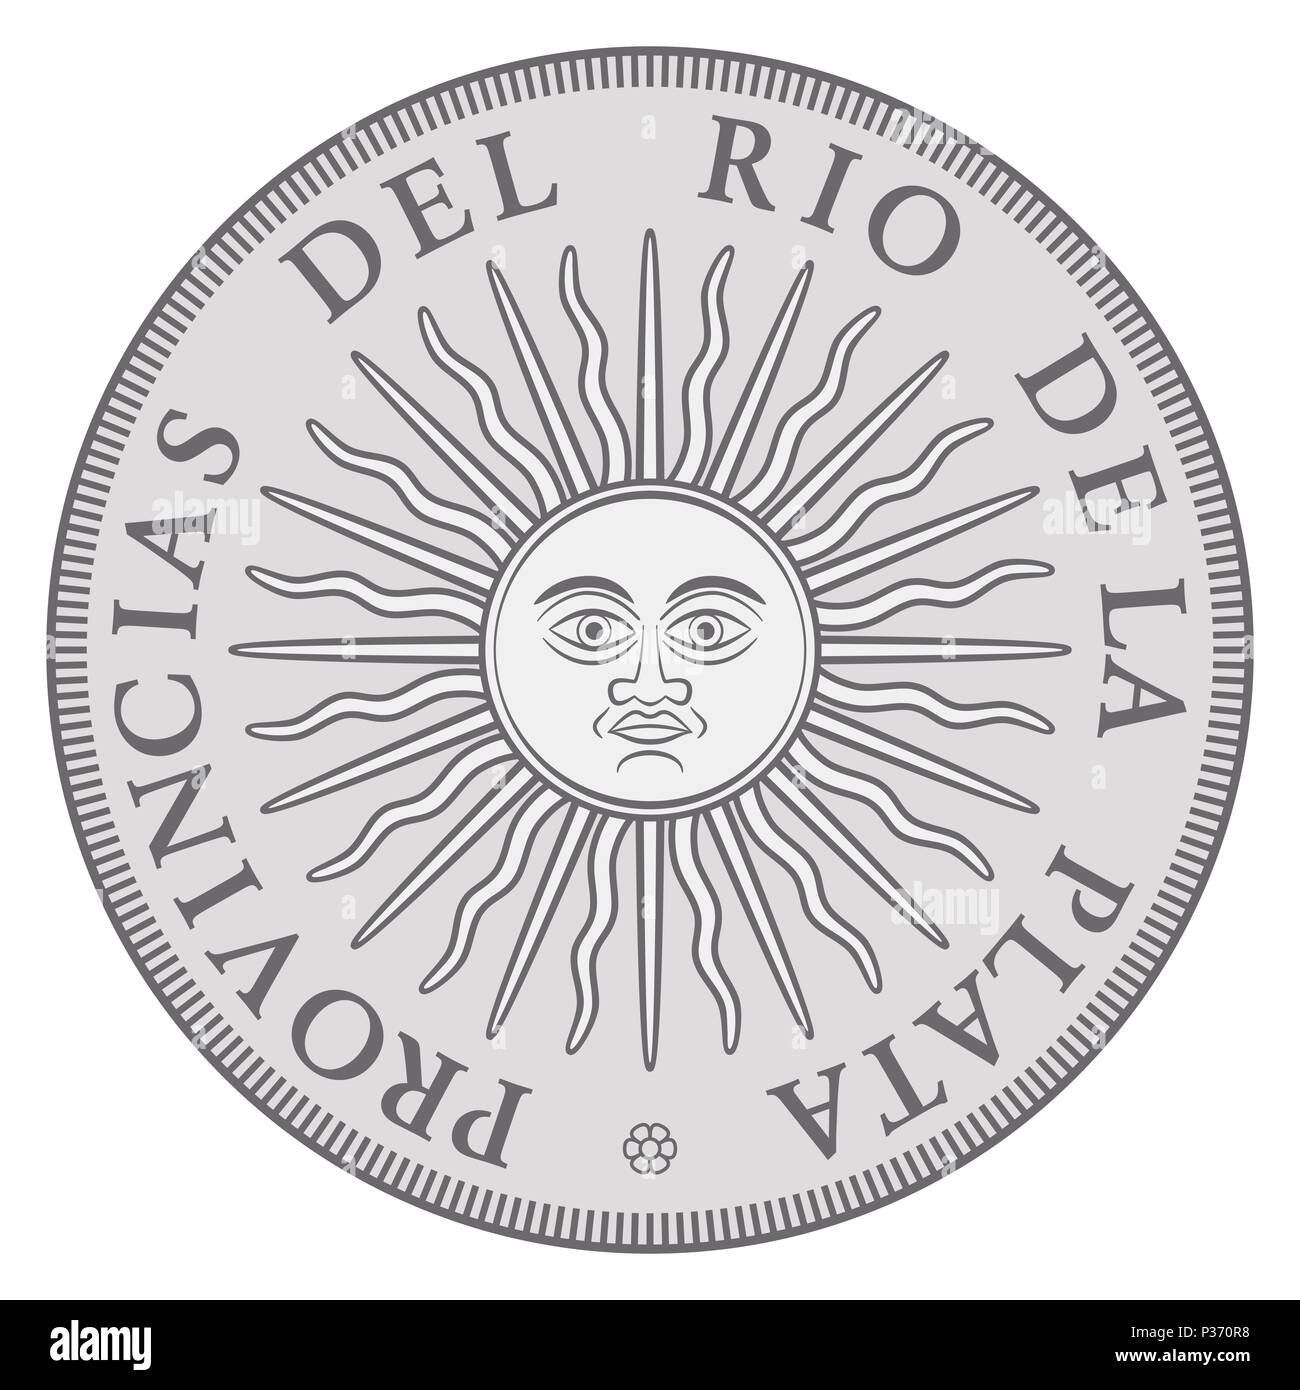 Inizio argentino medaglia d'argento con il sole di maggio, rilasciata a nome del Regno provincia del River Plate. Sol de Mayo, emblema nazionale. Foto Stock